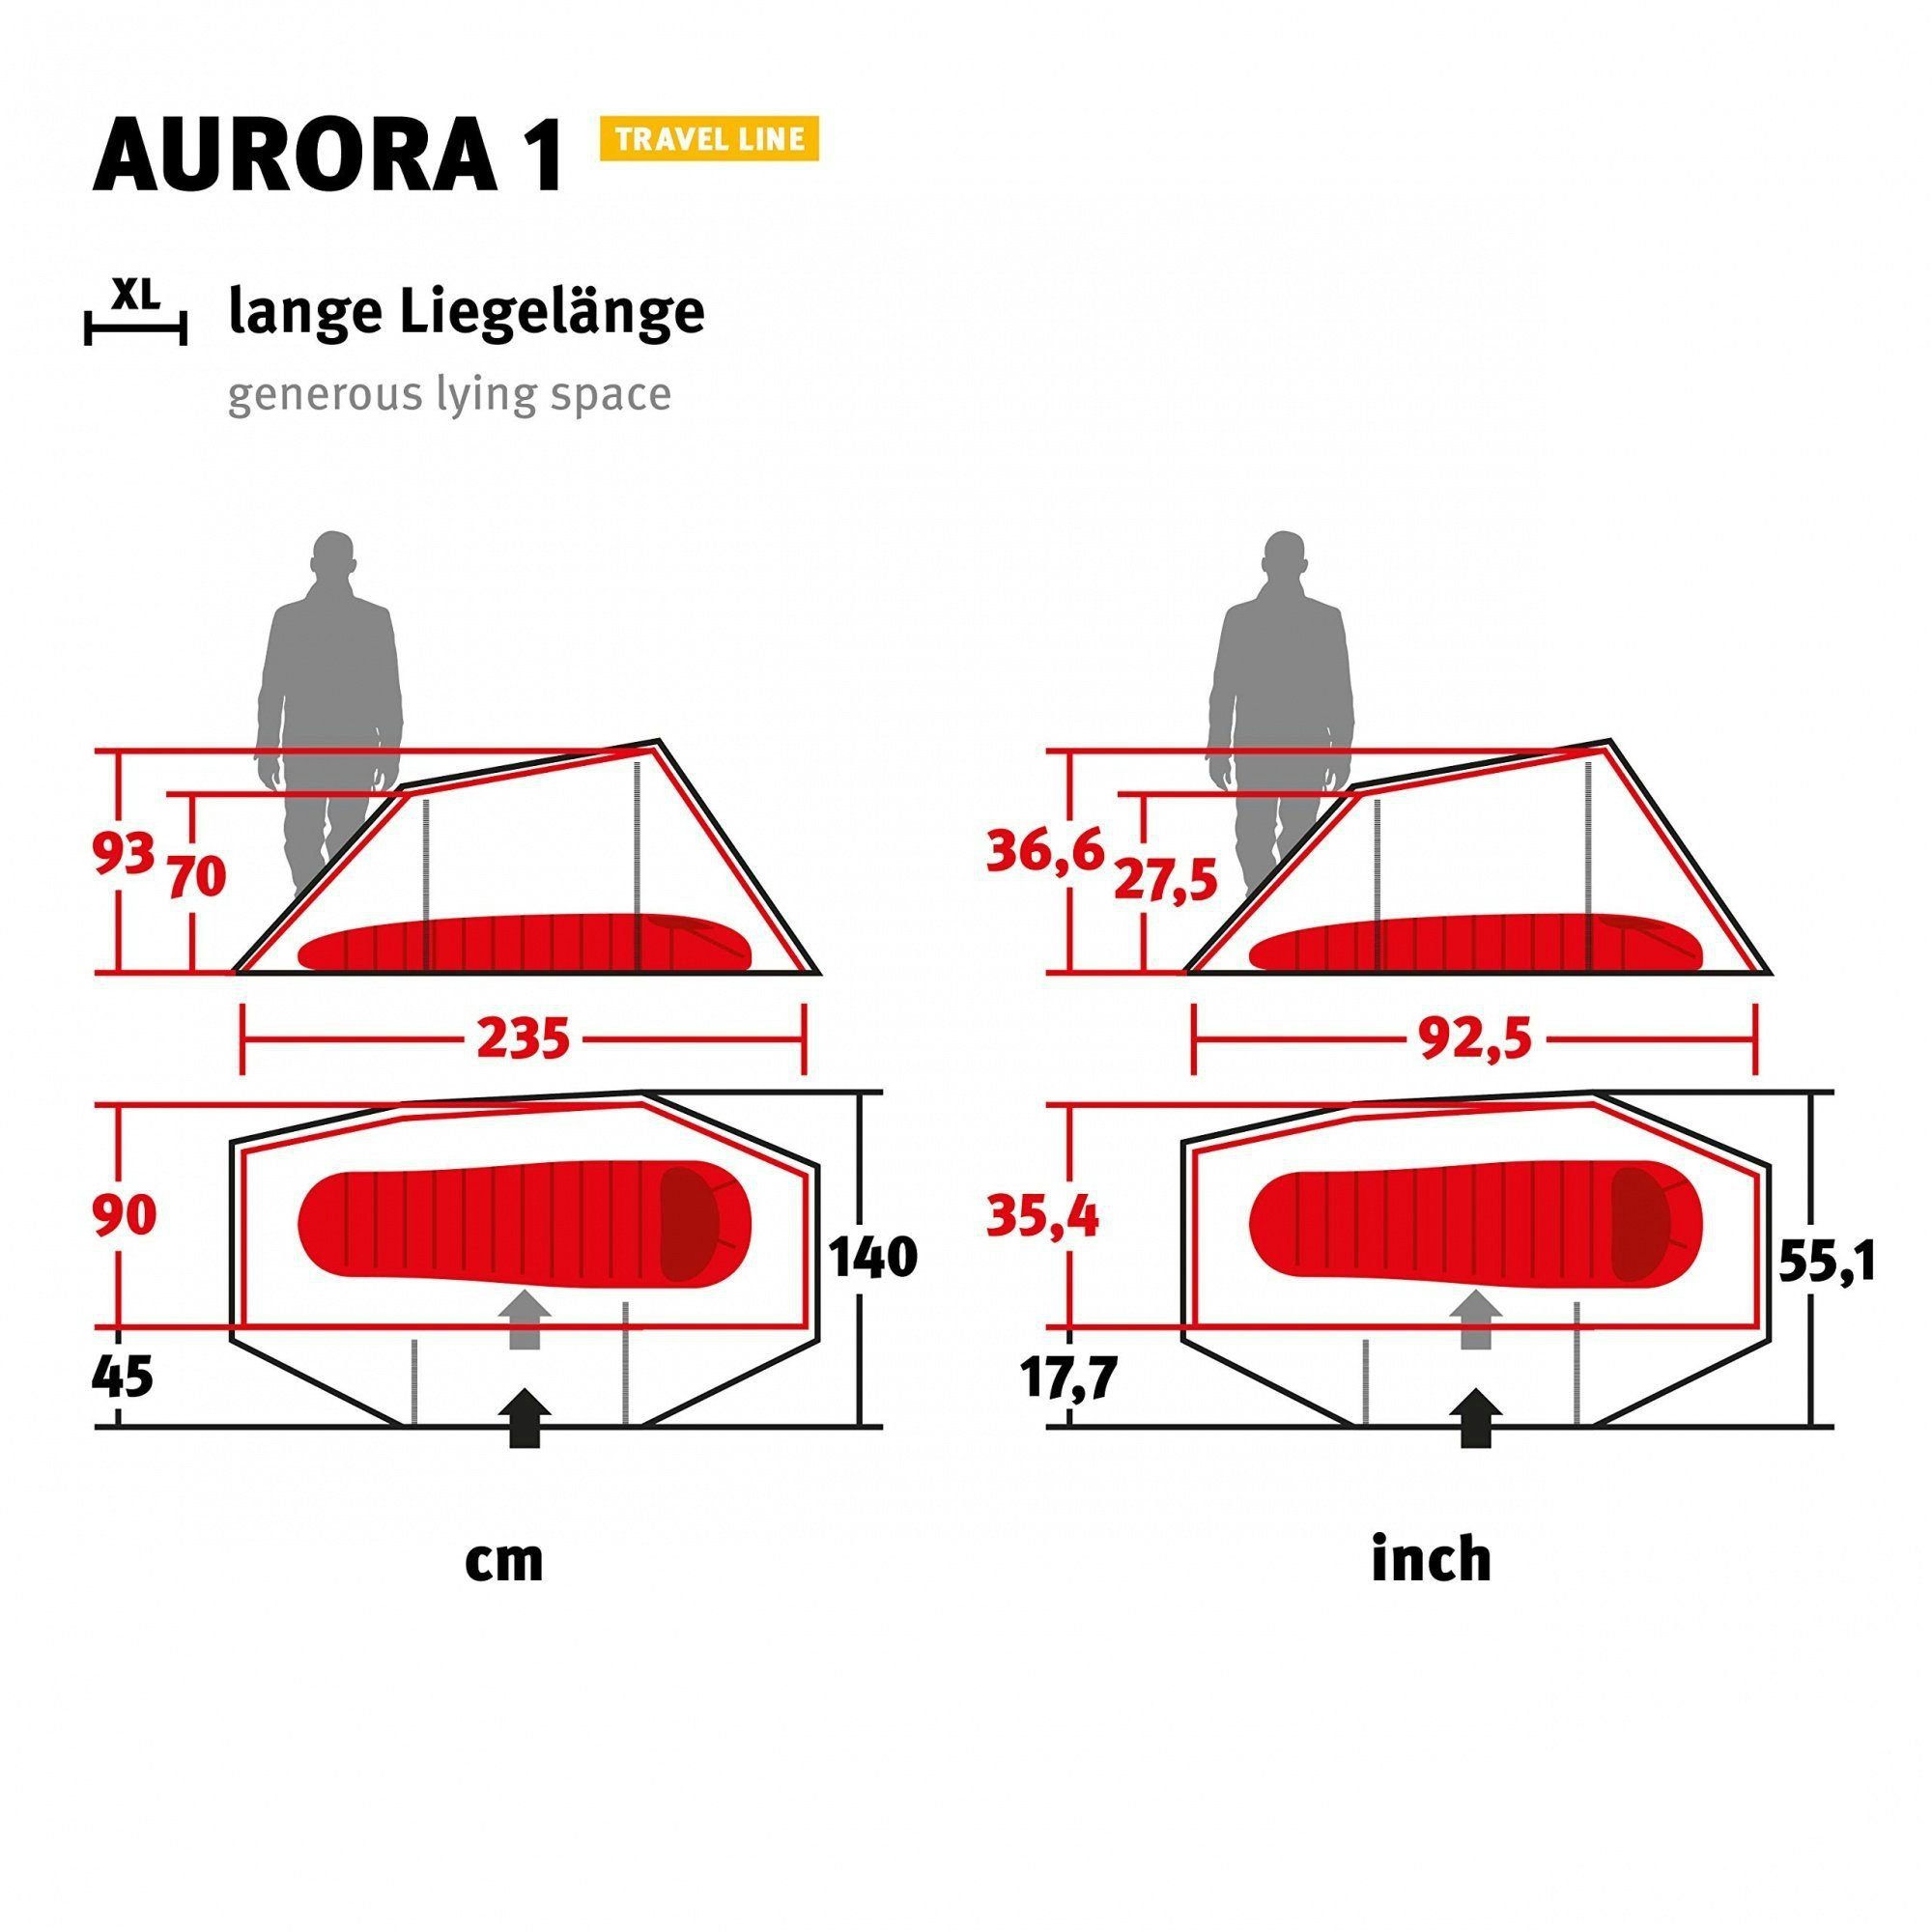 Wechsel Tents Line Aurora 1 Travel Tunnelzelt 1 Tunnelzelt 1-Personen-Zelt, Personen: - 